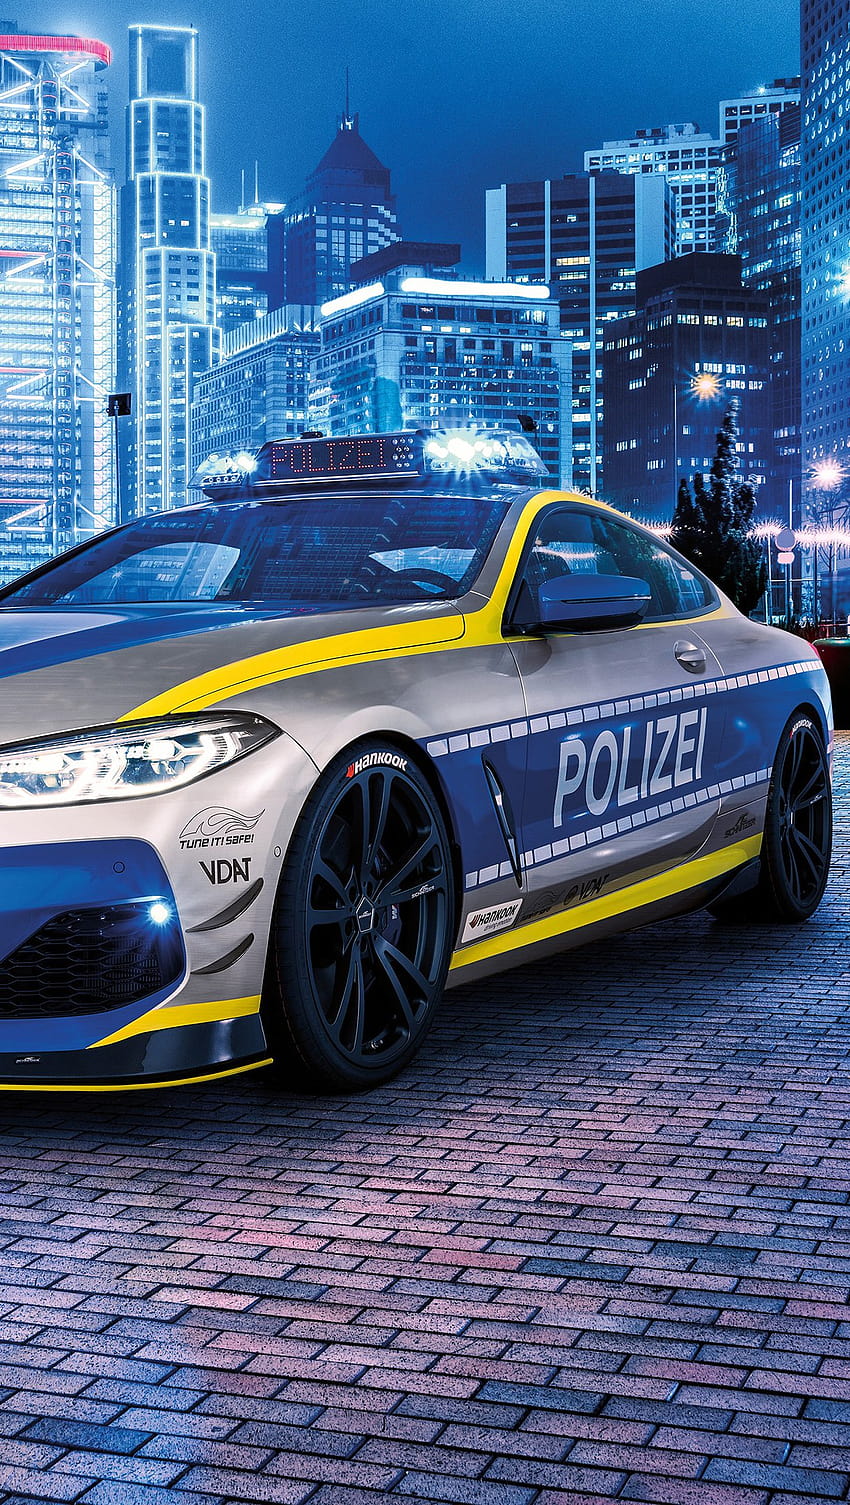 BMW polizei cop car Ultra ID:7206, bmw police car HD phone wallpaper